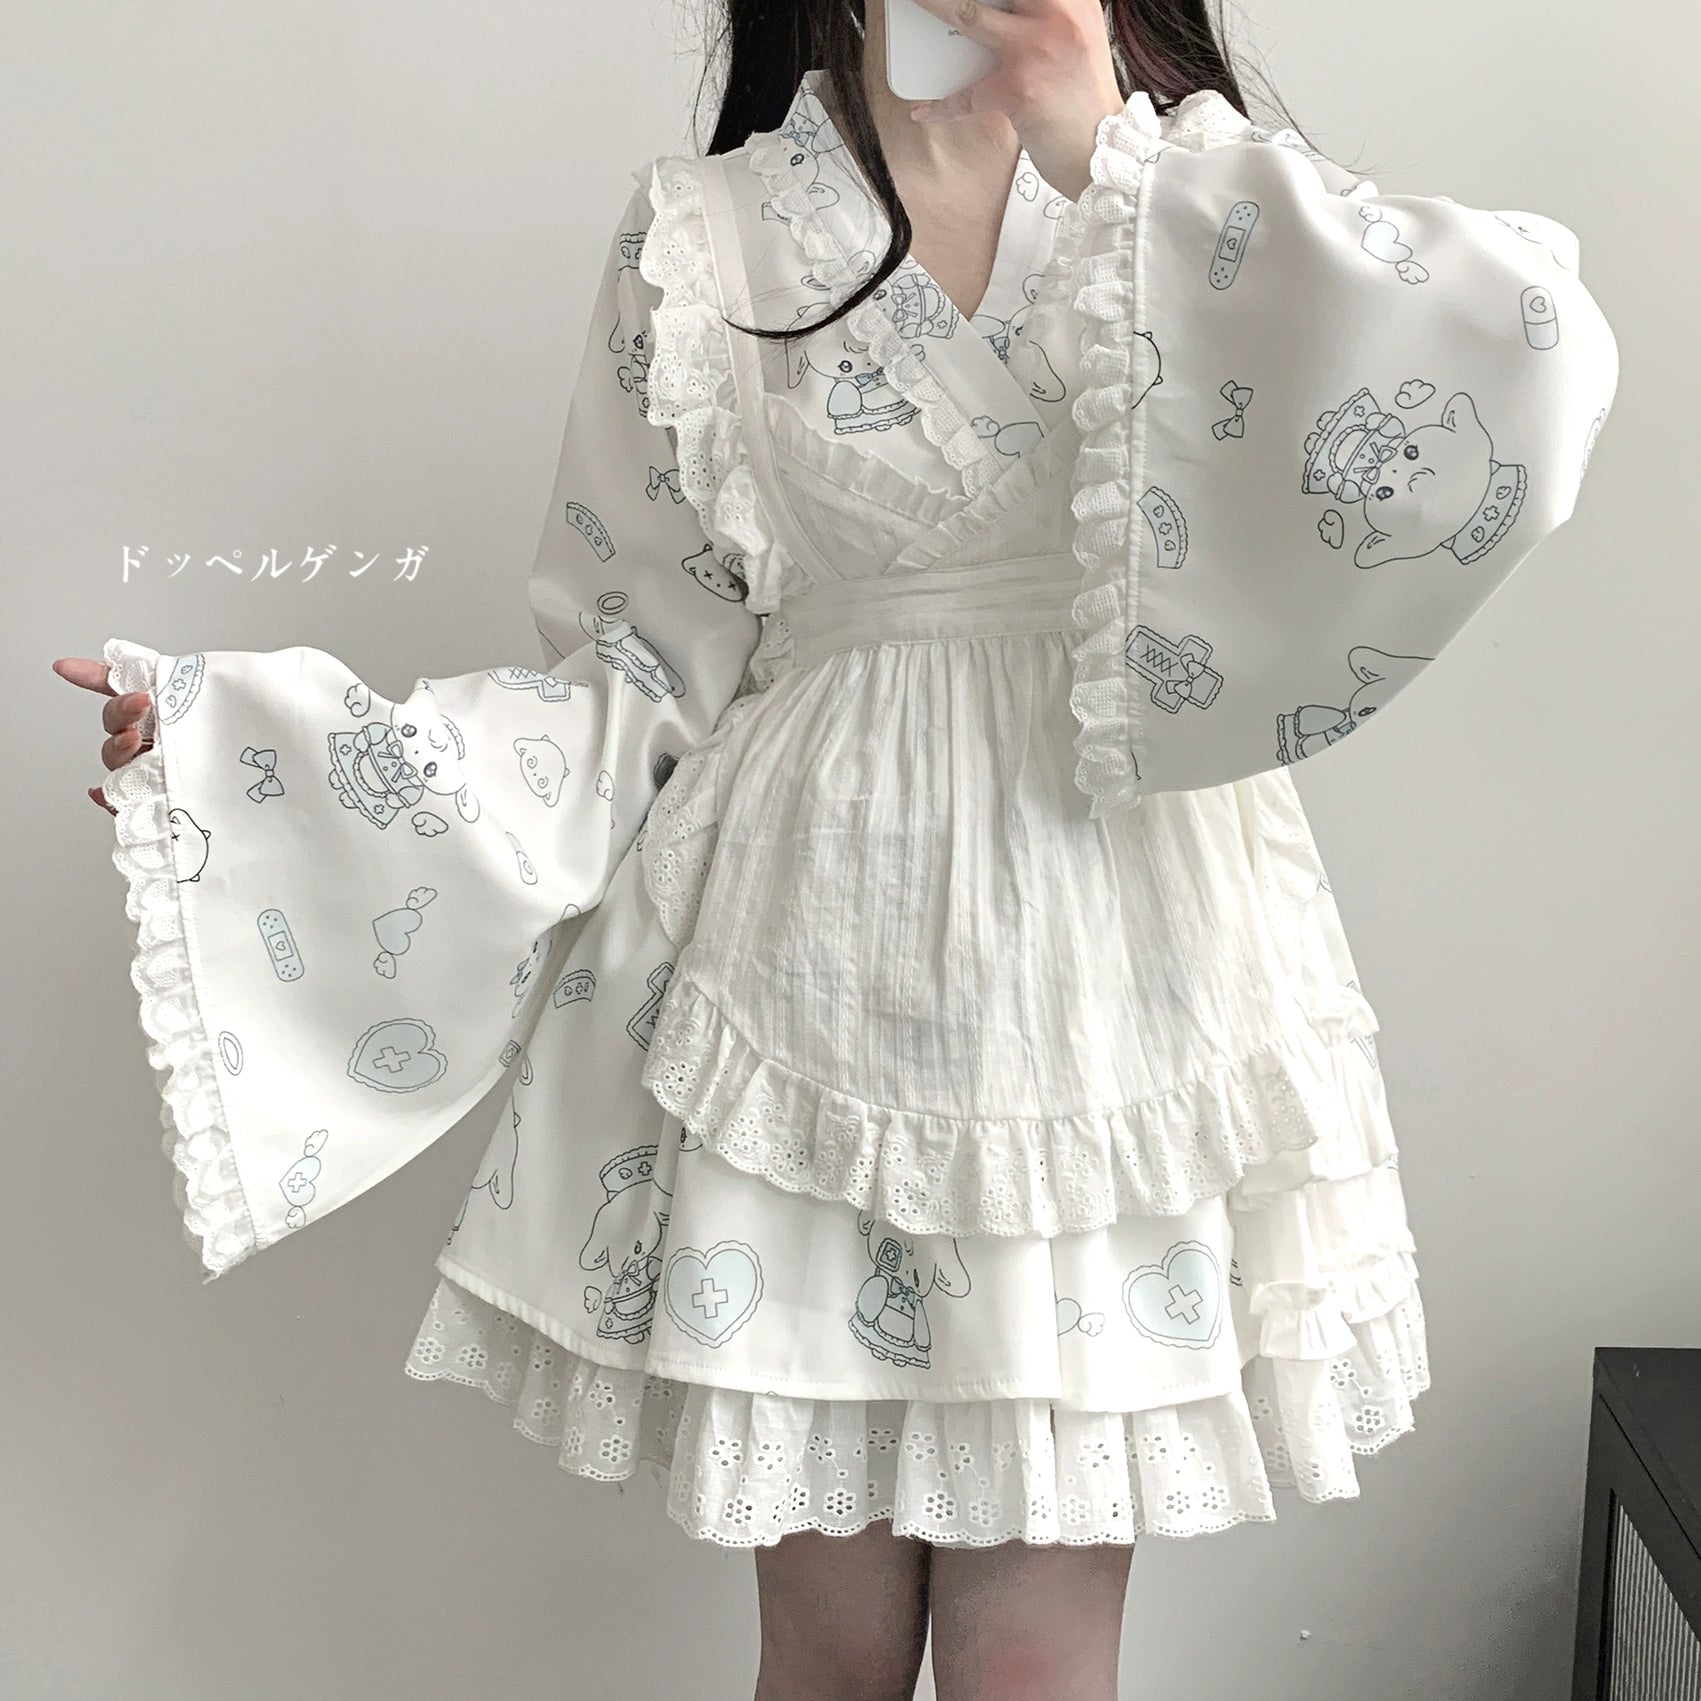 Tenshi Kaiwai Patchwork Skirt Kimono Top White Apron Three-Piece Set 36786:536682